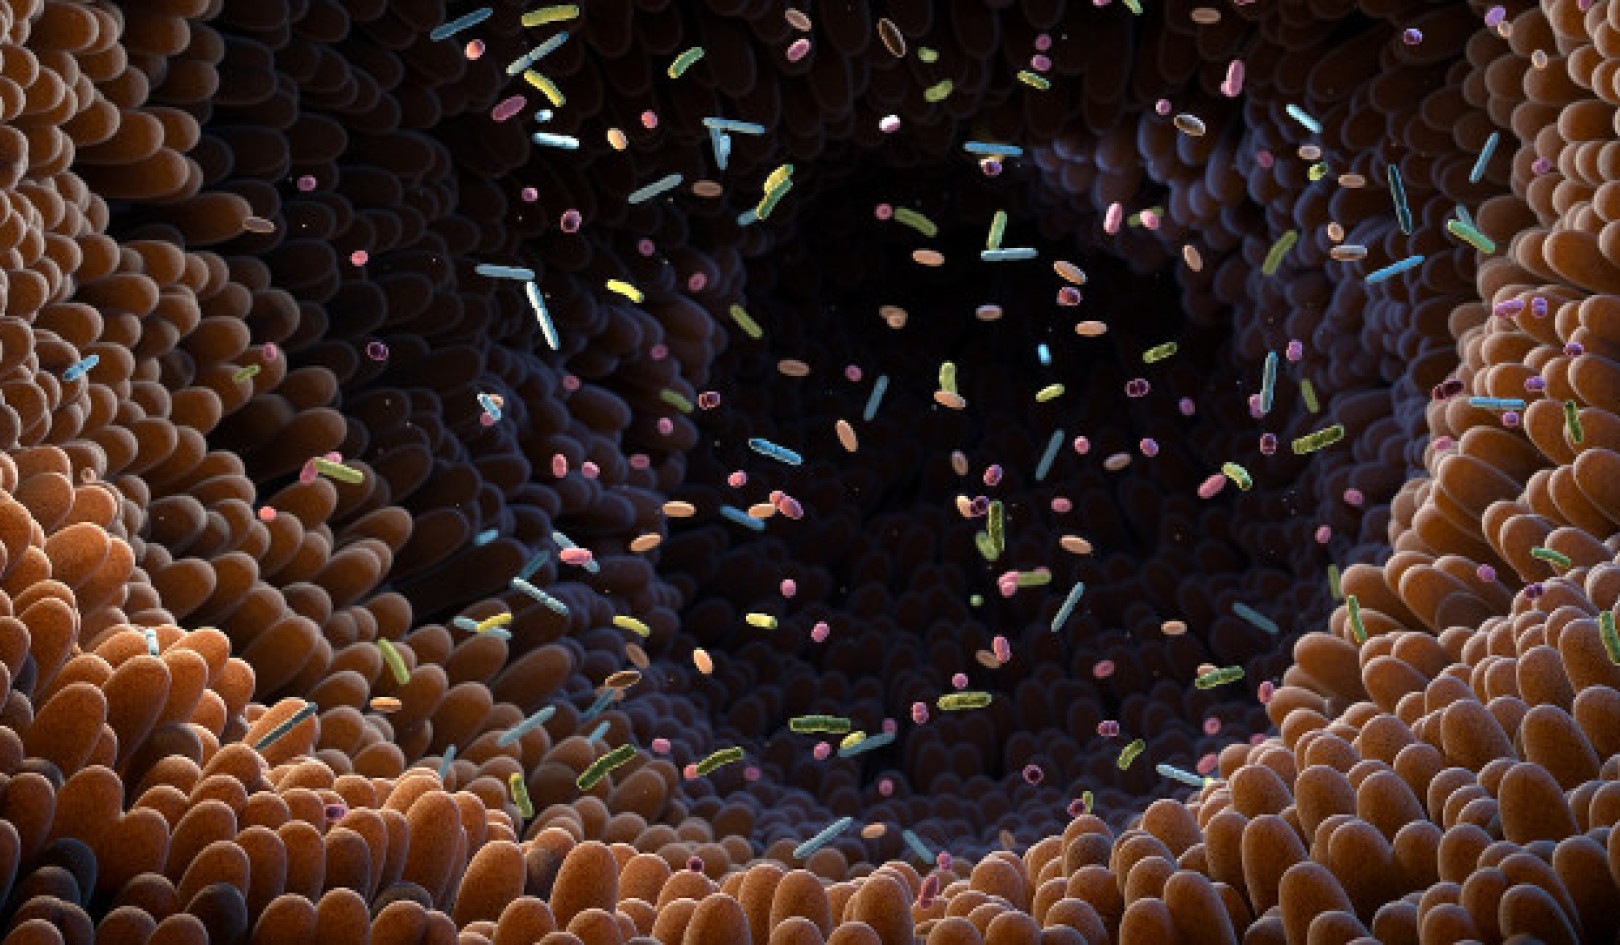 Das Potenzial des Darmmikrobioms erschließen: Auswirkungen auf Gesundheit und Behandlung